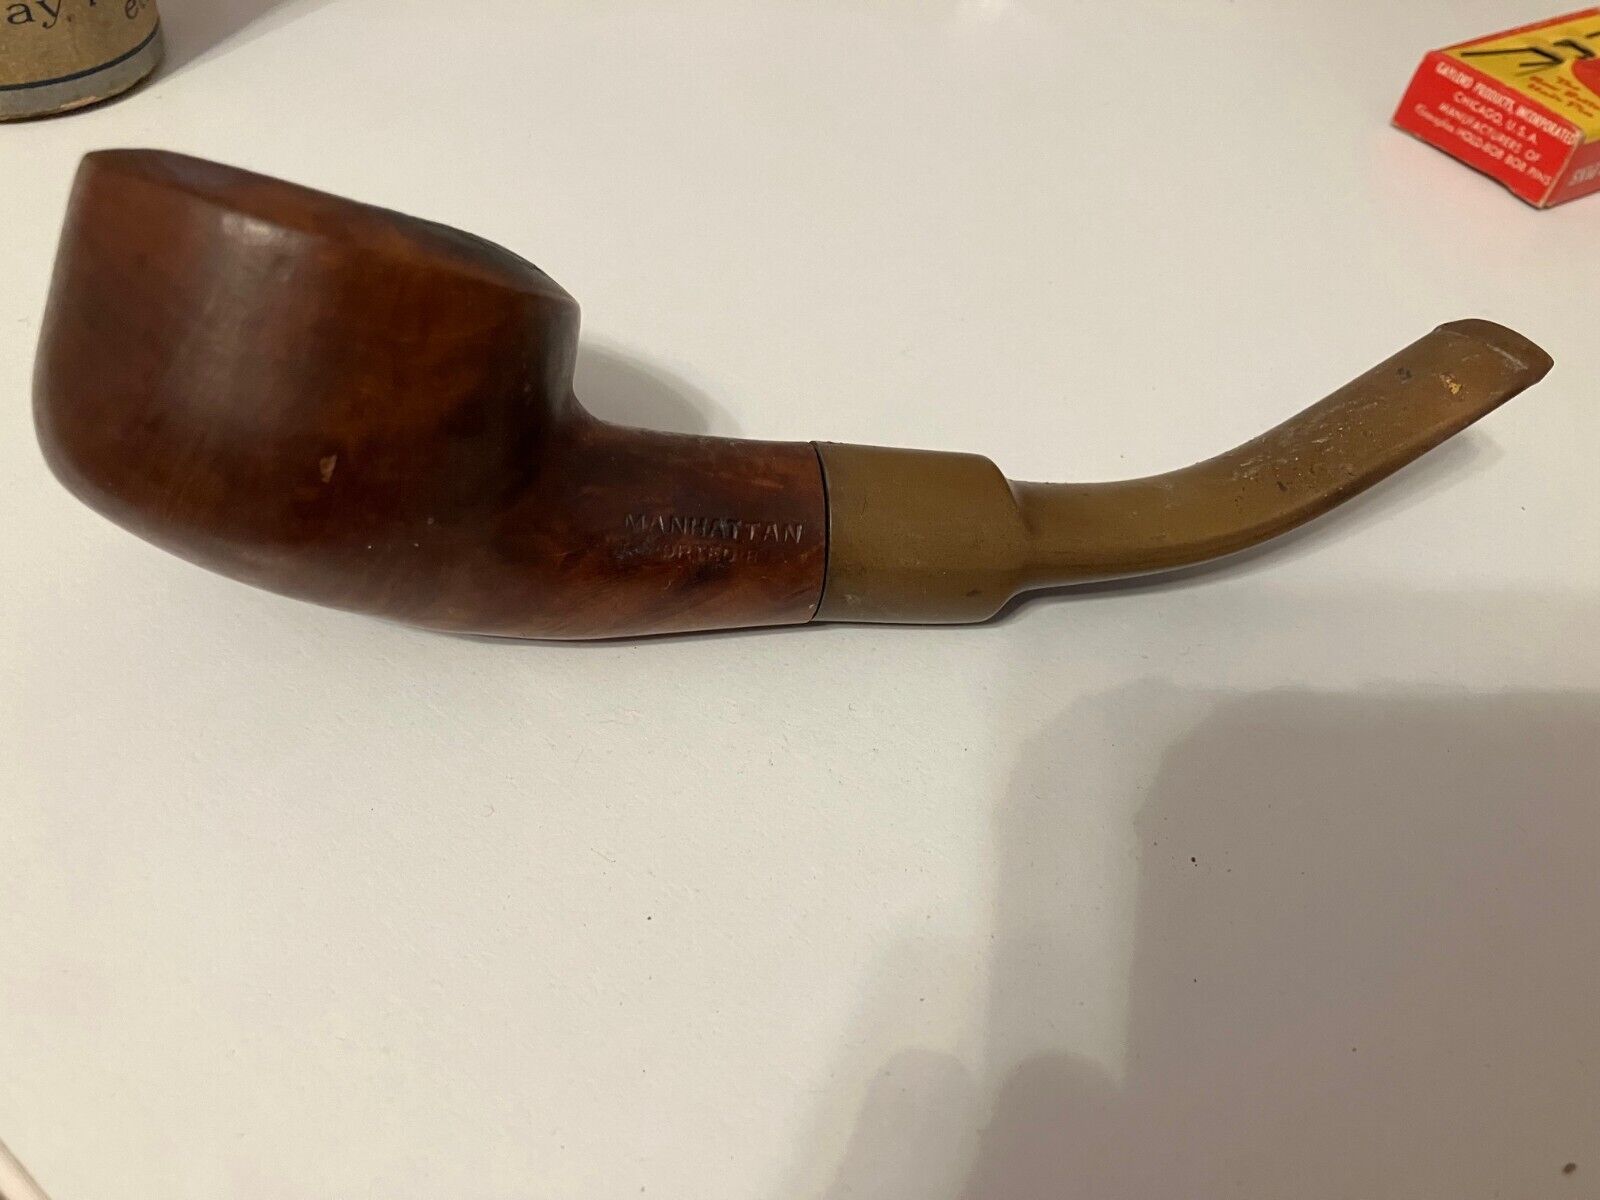 Manhattan imported vintage / antique pipe.